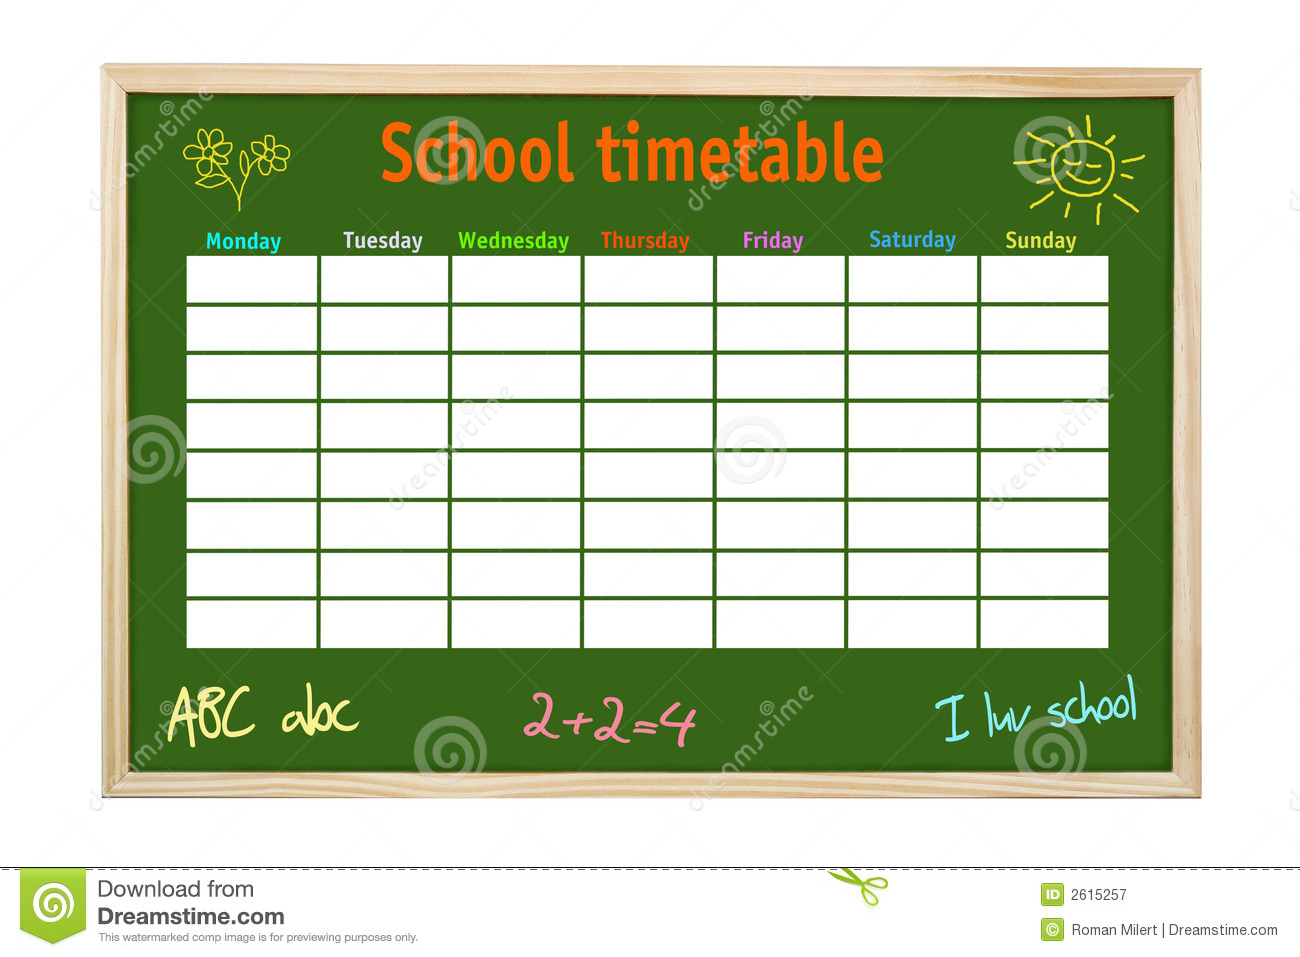 SCHOOL TIMETABLE